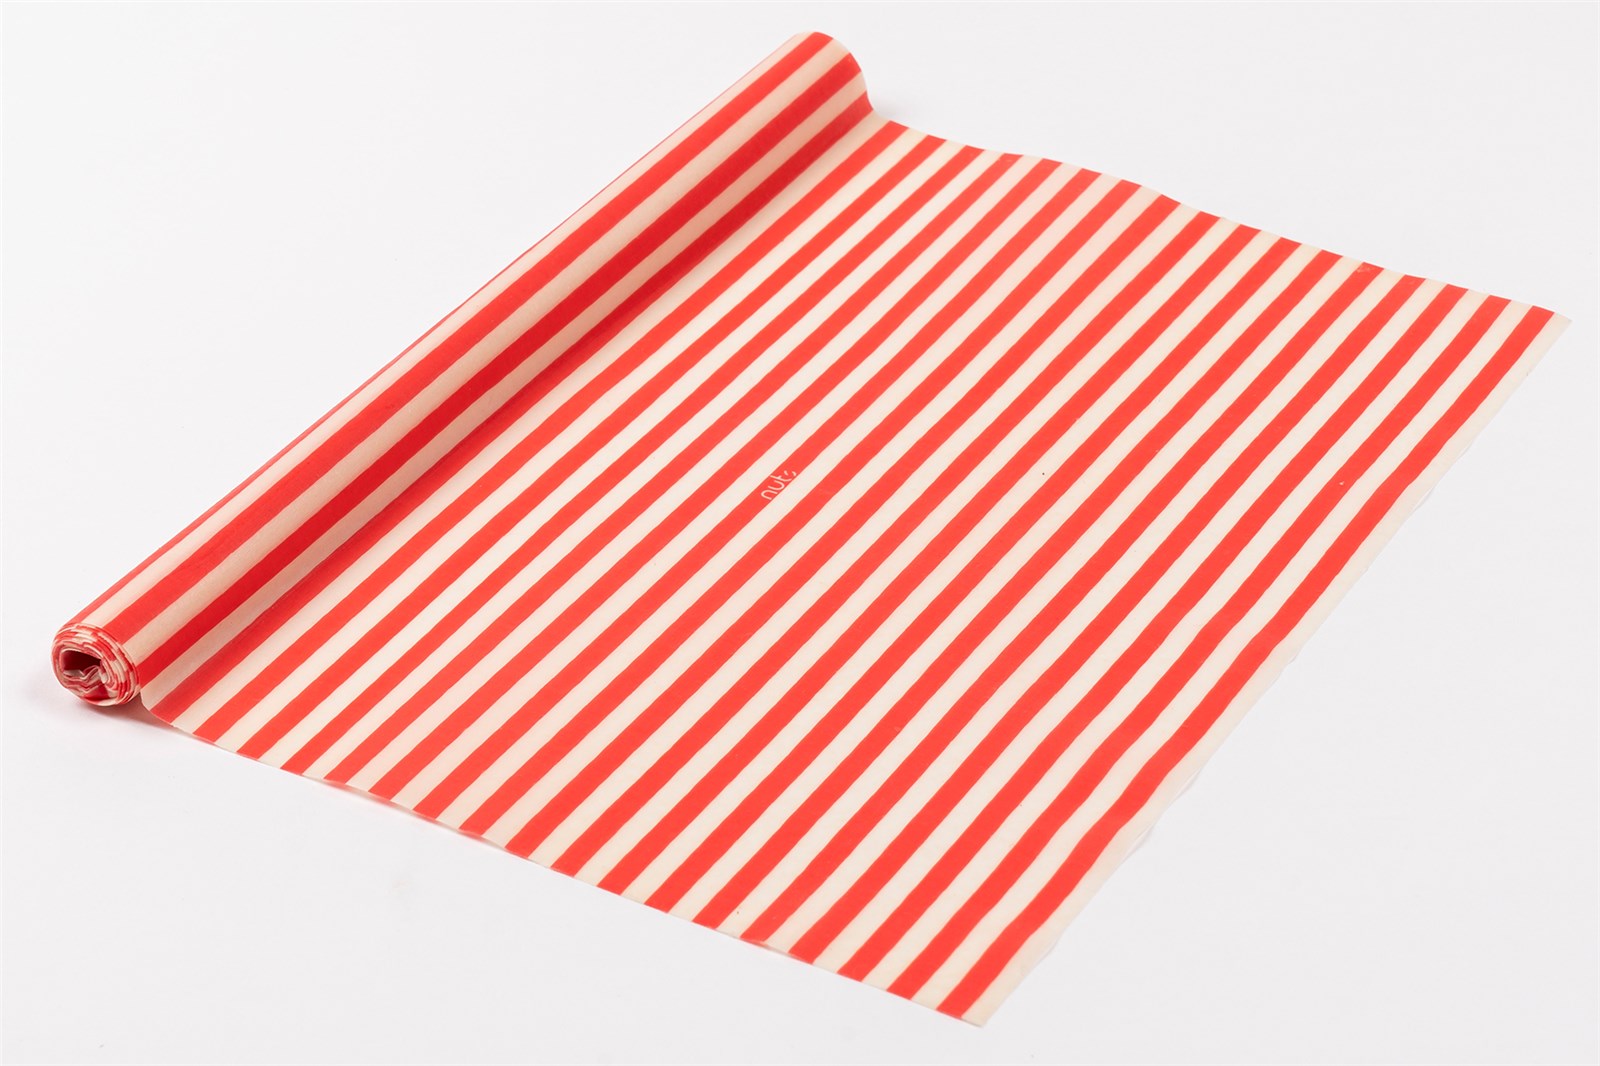 Bienenwachstuch-Rolle Streifen Rot/weiss 30.5x90cm - KAQTU Design